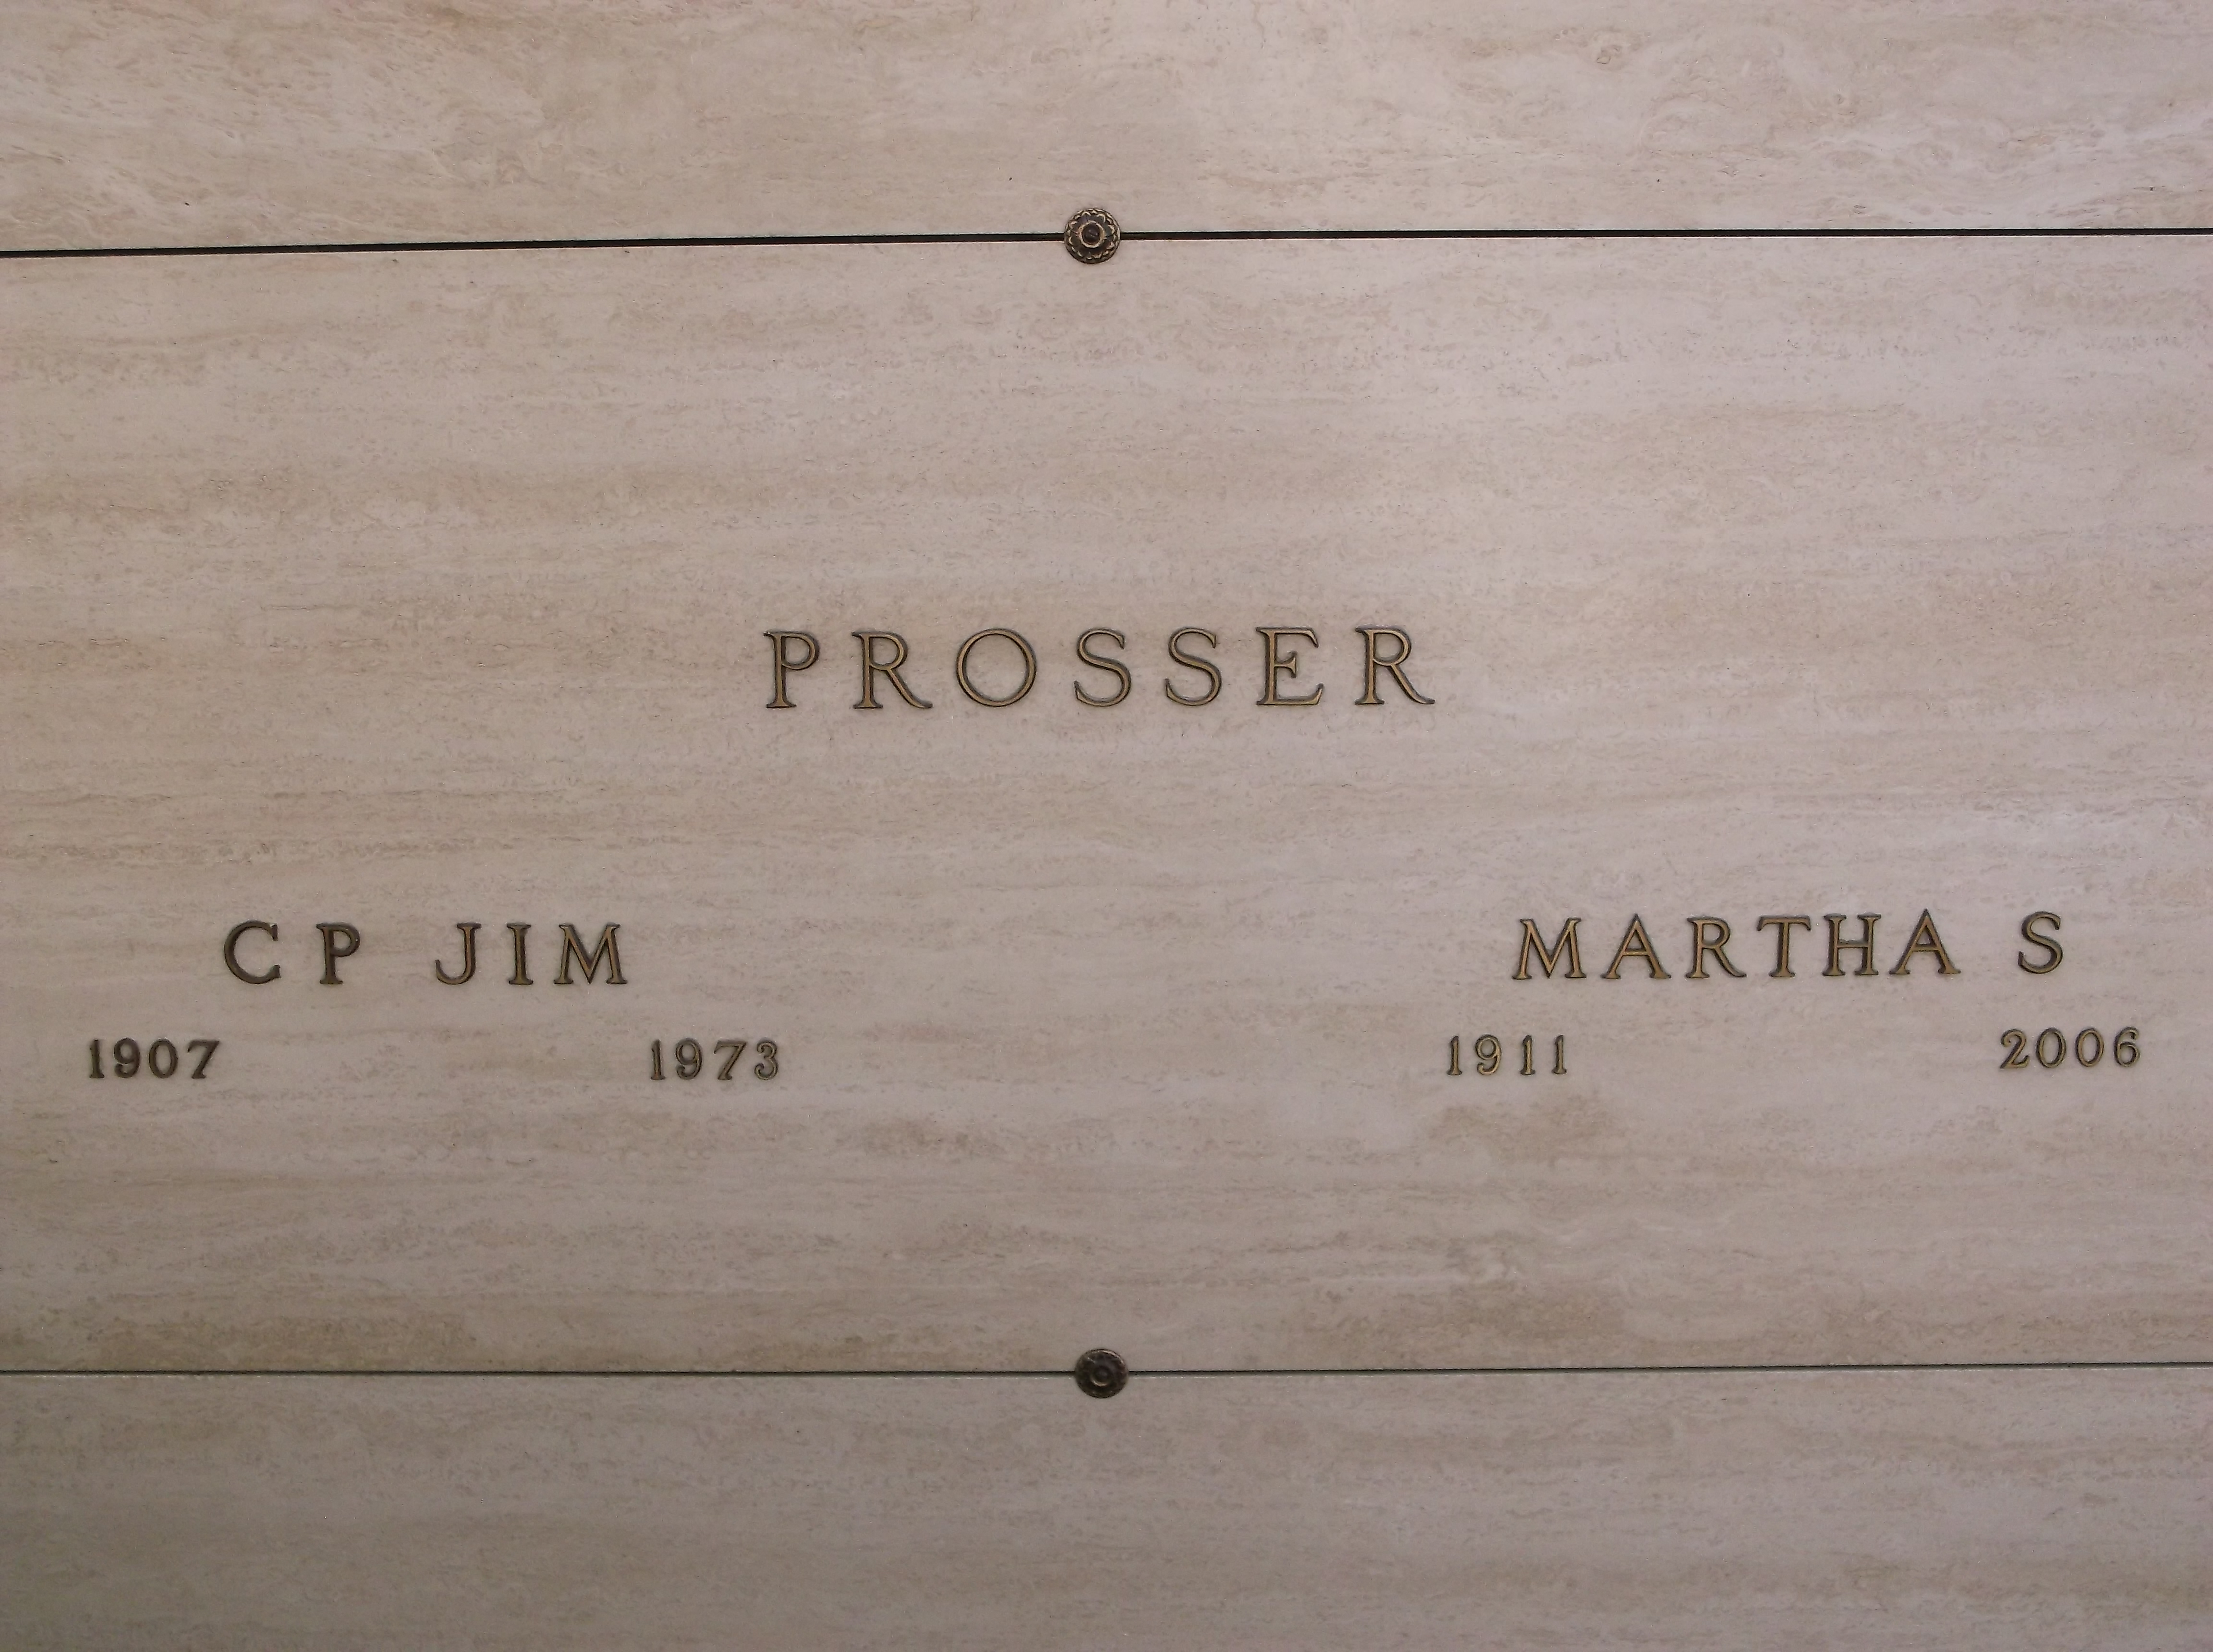 C P Jim Prosser